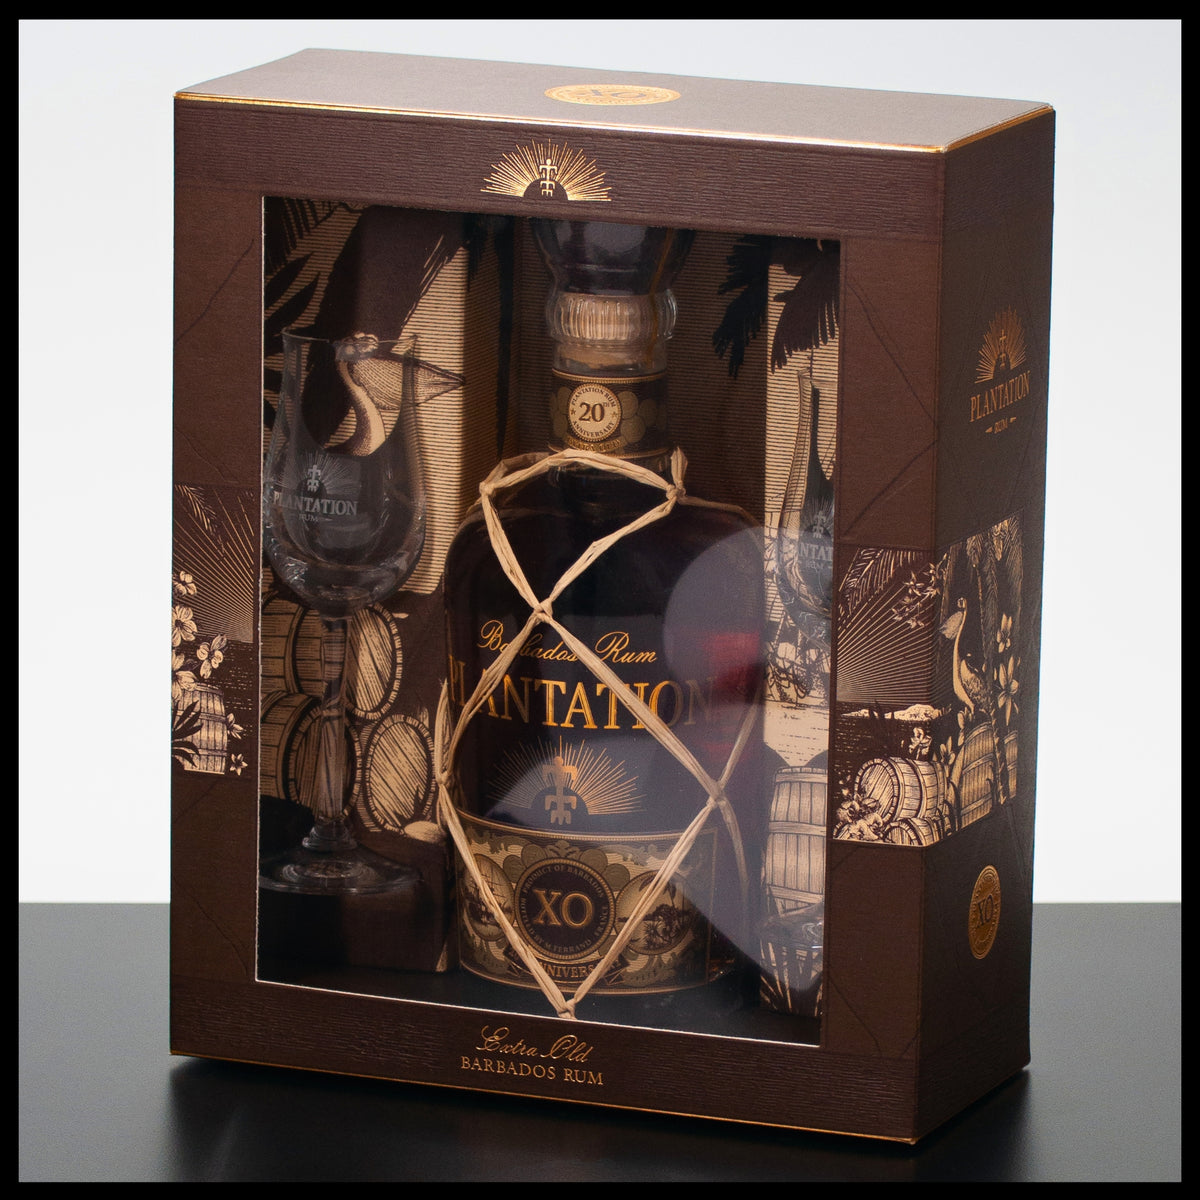 Gläsern der Plantation Rum Geschenkbox mit in XO Trinklusiv Barbados |